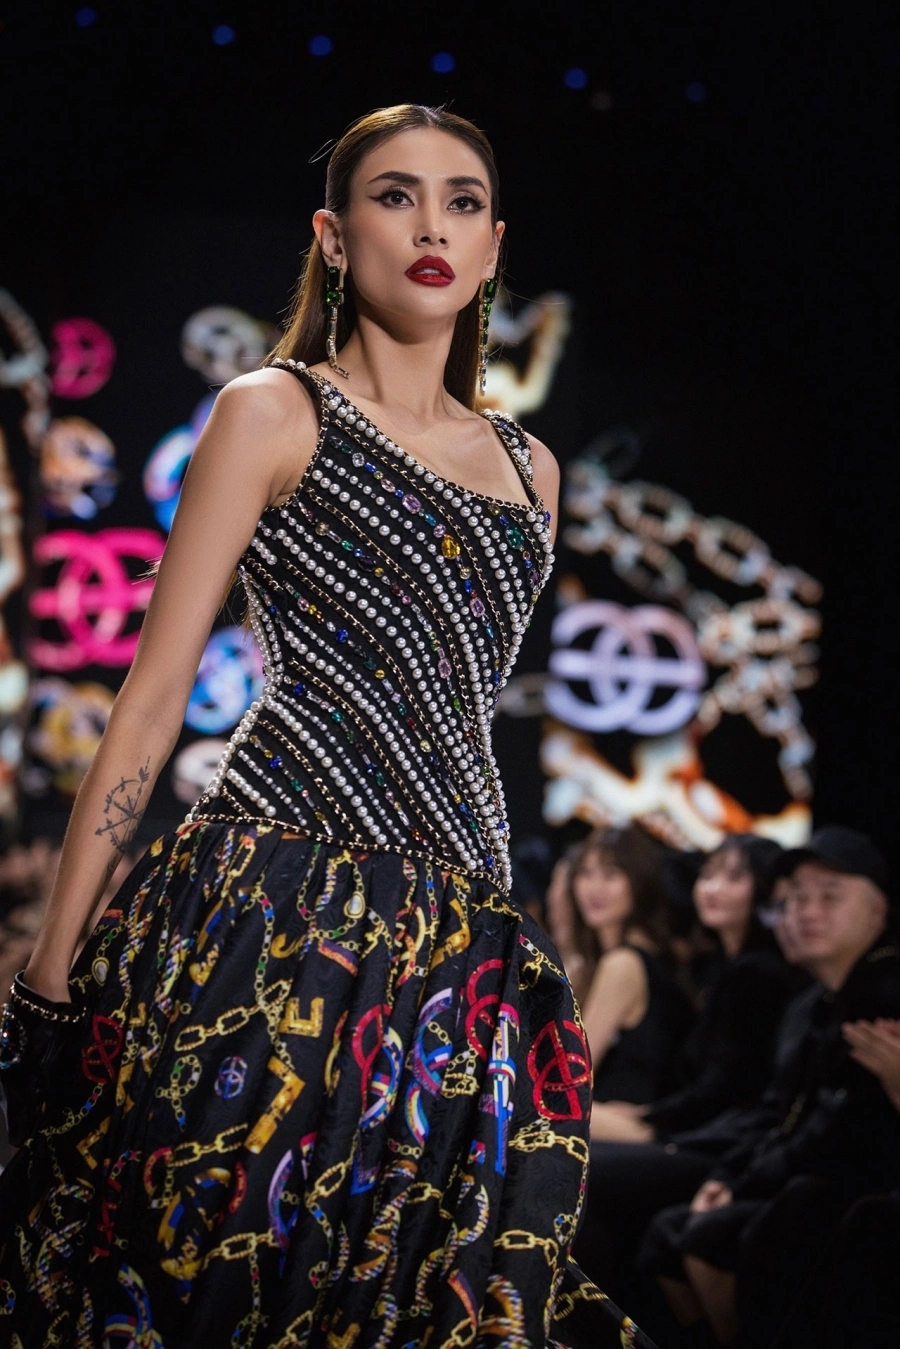 Elise mở đại tiệc thời trang với những mẫu thiết kế độc quyền, mở màn xu hướng Thu - Đông 2023